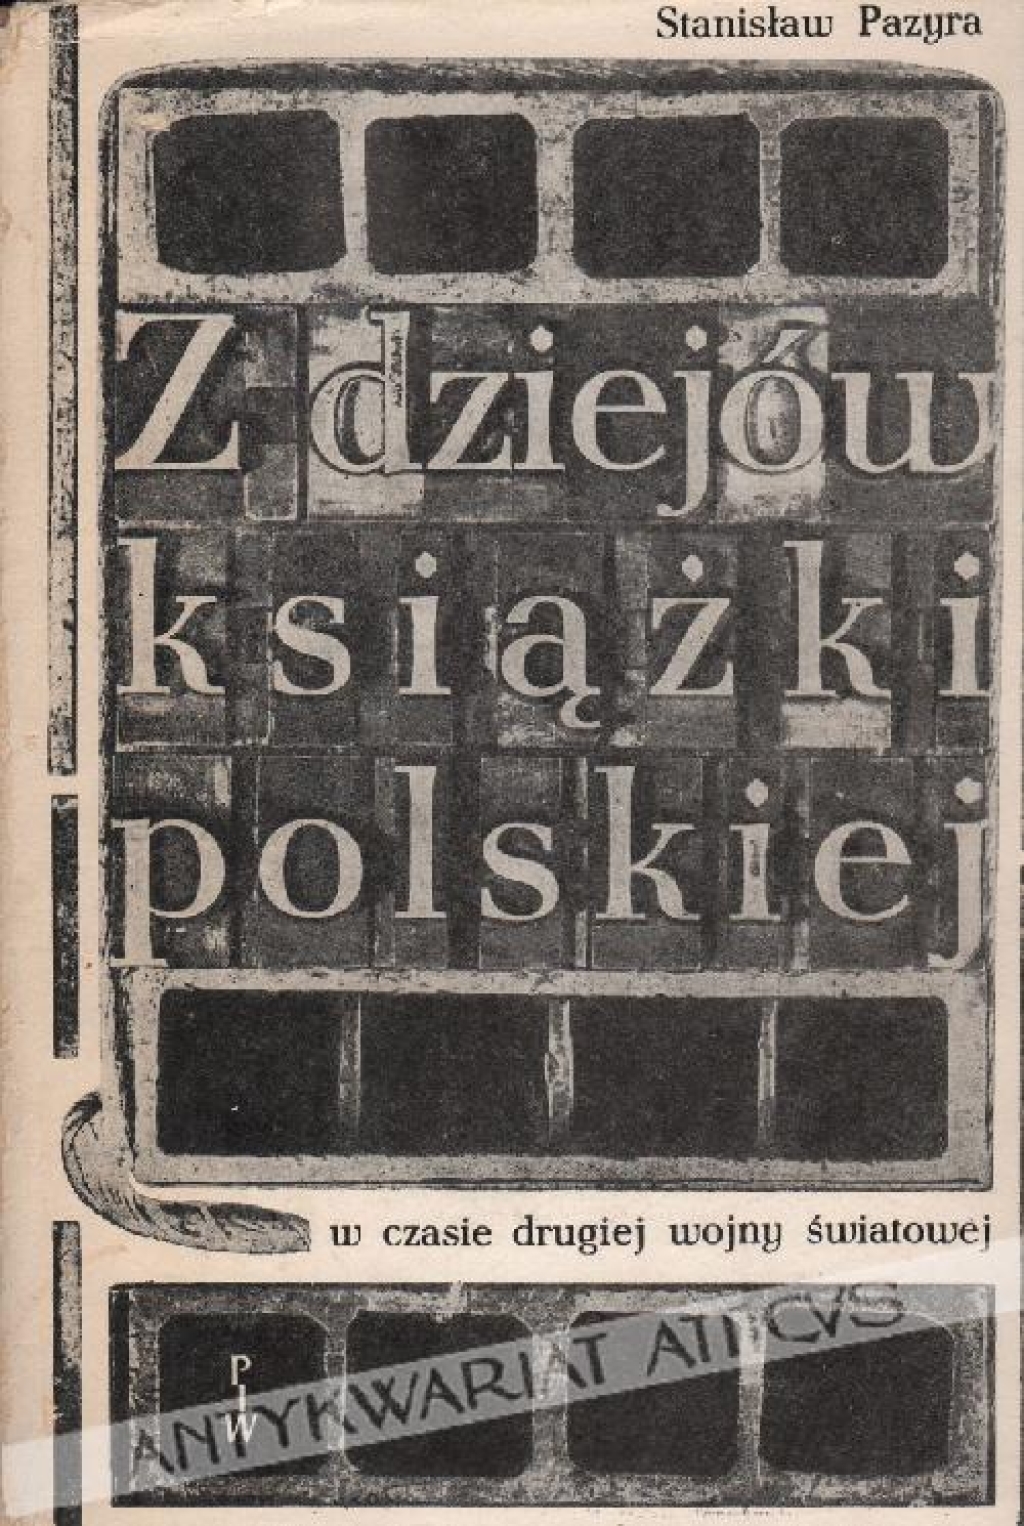 Z dziejów książki polskiej w czasie drugiej wojny światowej